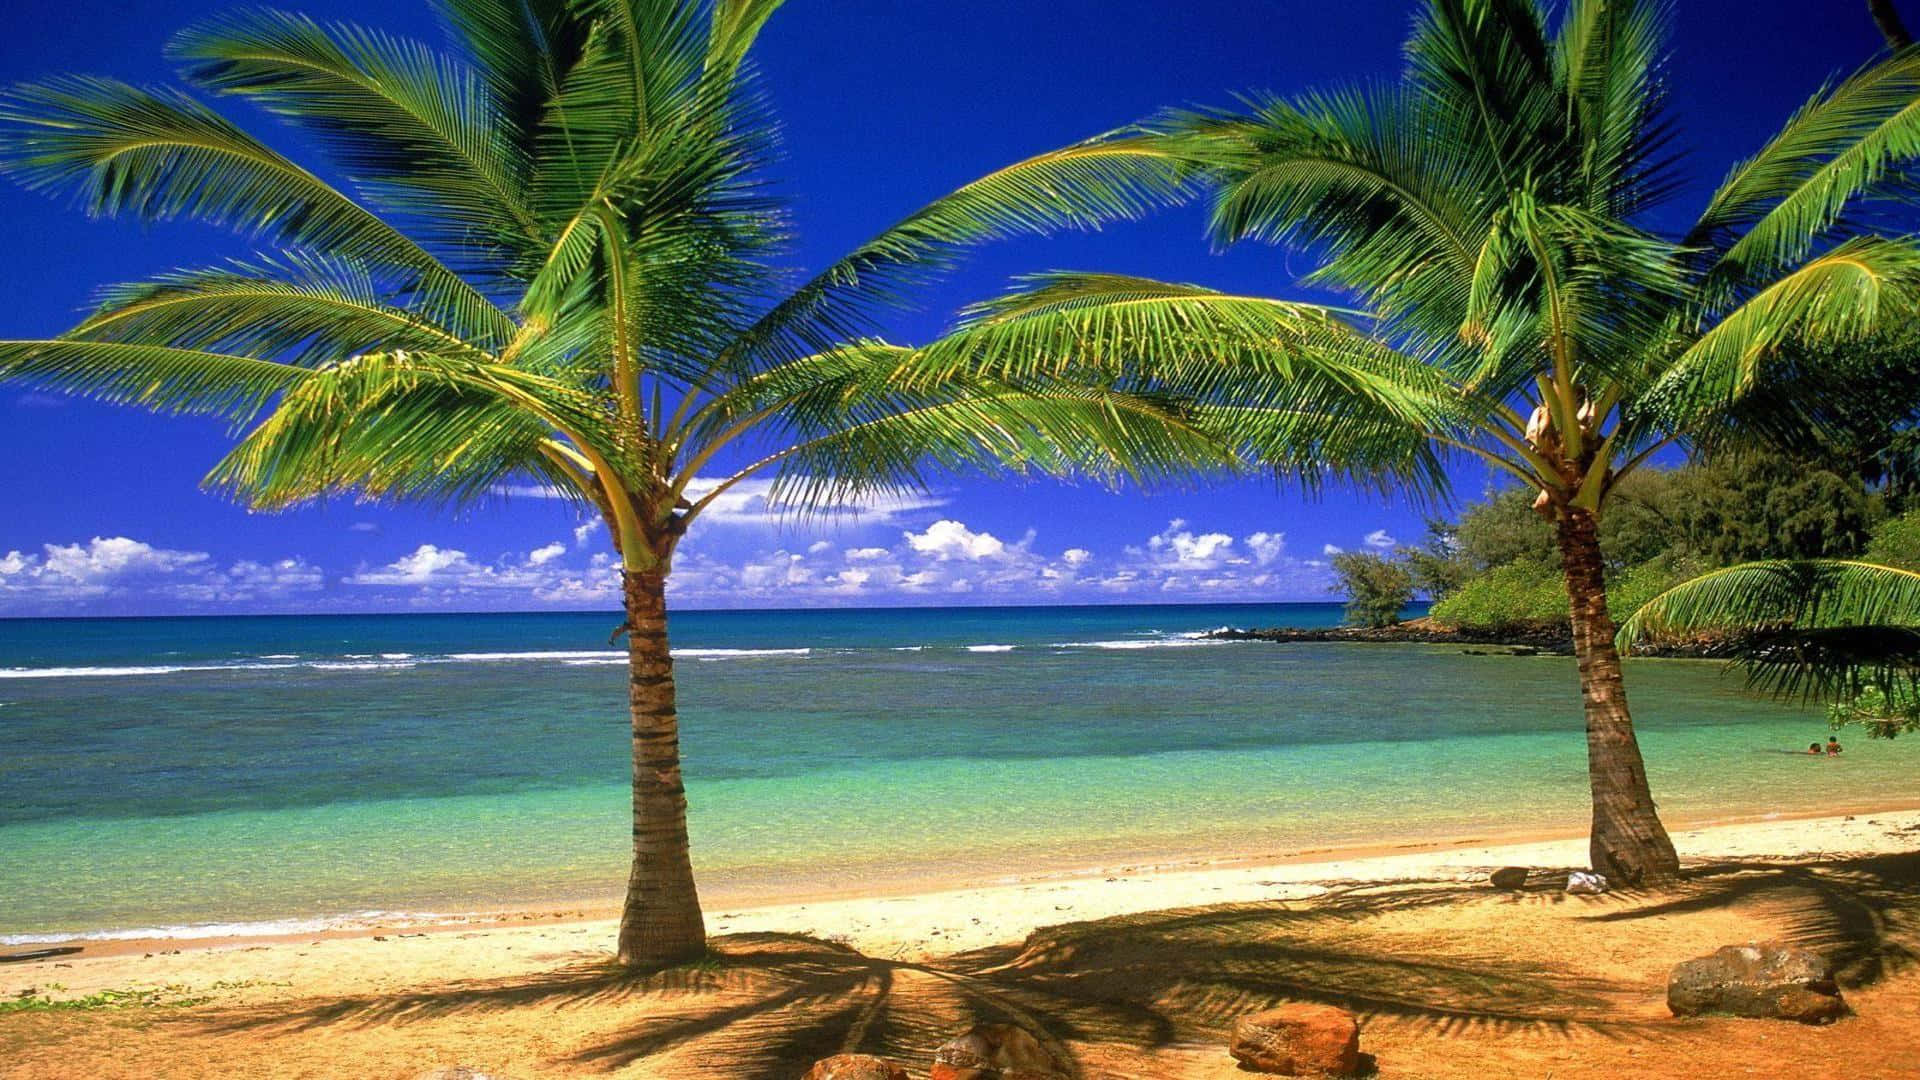 Gönnensie Sich Eine Auszeit Von Der Realität Und Entspannen Sie Sich Am Palm Tree Beach. Wallpaper